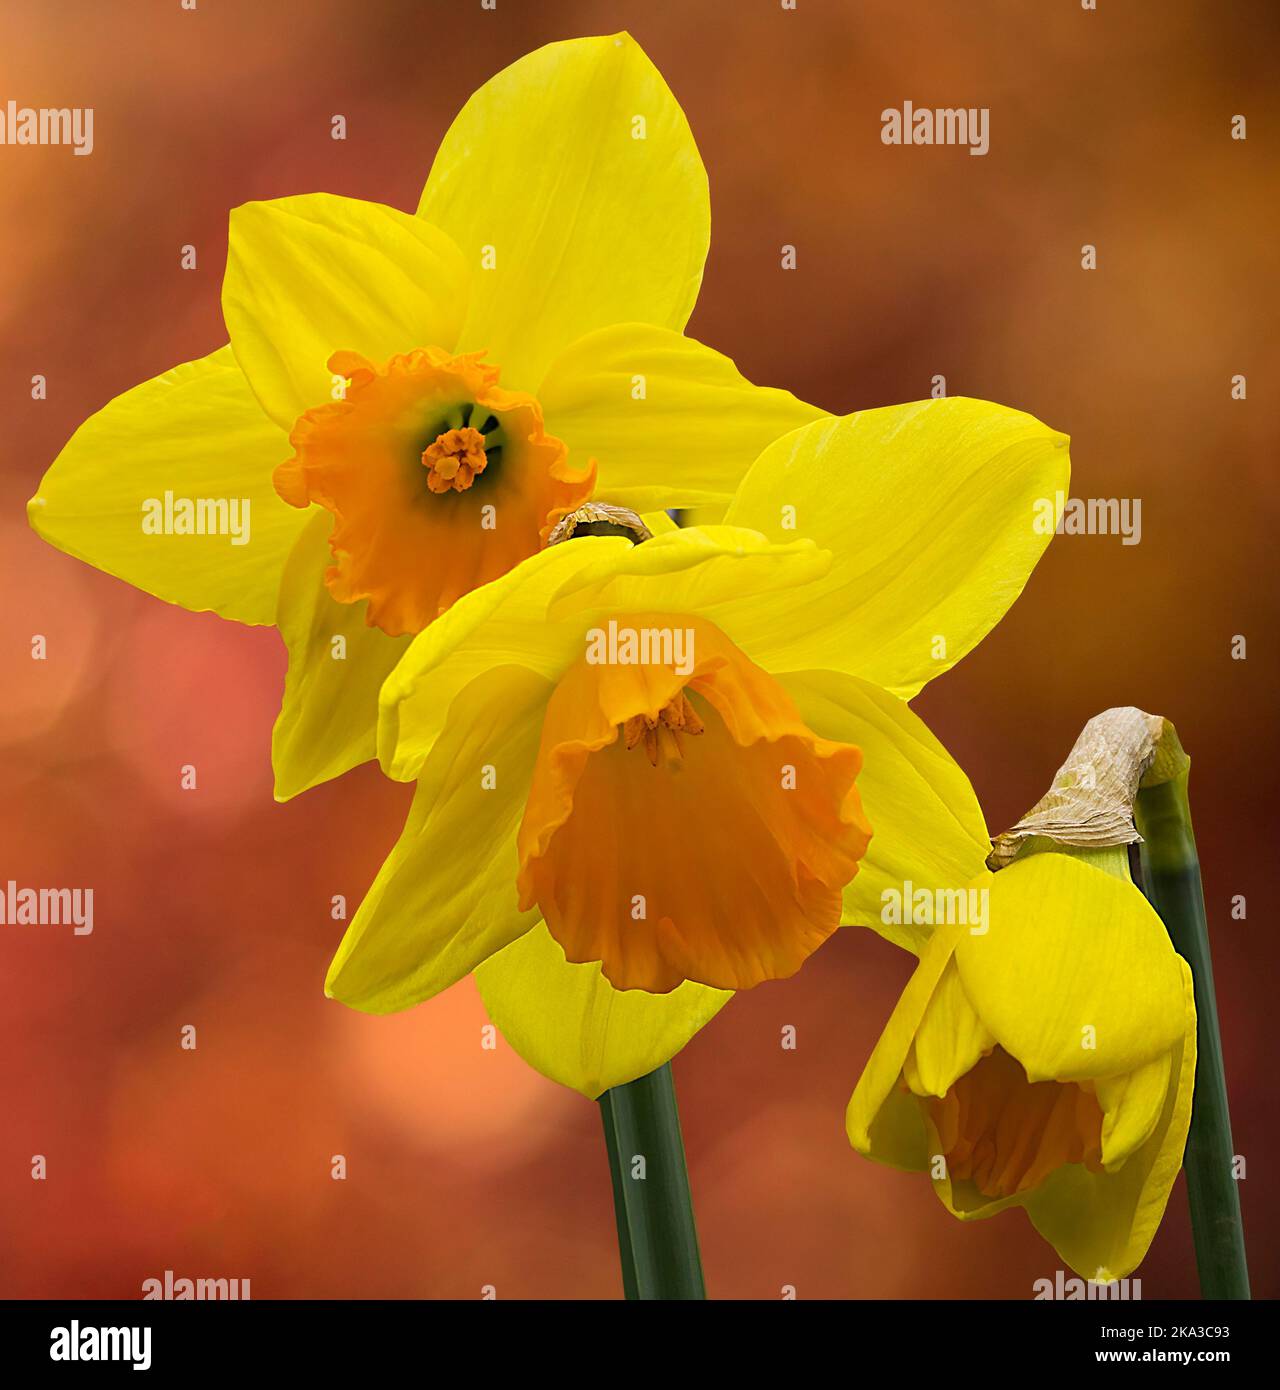 Wilde Narzissen (Narcissus pseudonarcissus) sechs breite, spitz zulaufende gelbe Blütenblätter um dunklere, orange gelbe Trompete, drei Blüten saisonaler Frühjahrspflanze Stockfoto